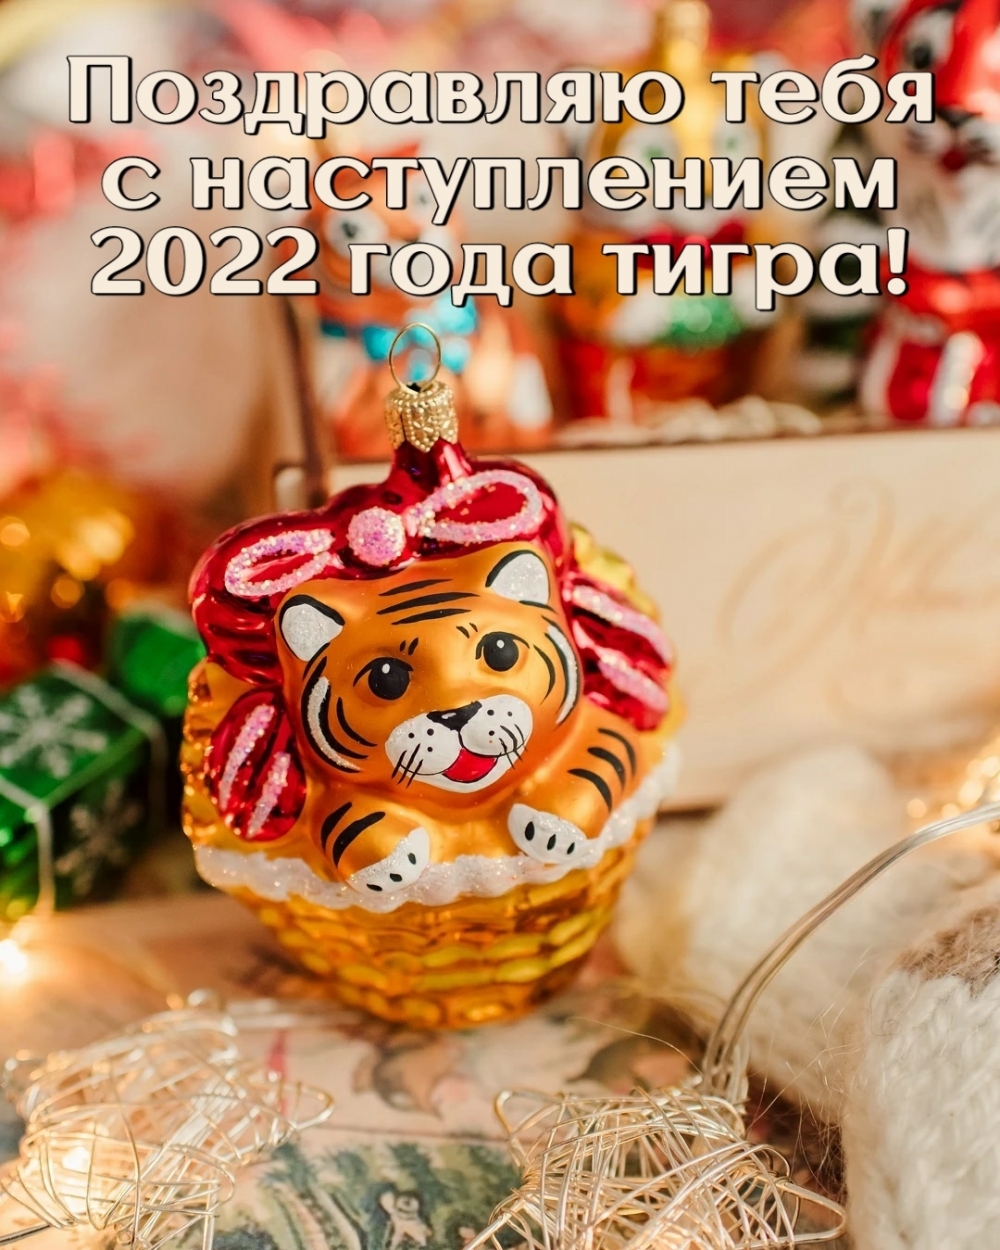 Поздравляю тебя с наступлением 2022 года тигра!